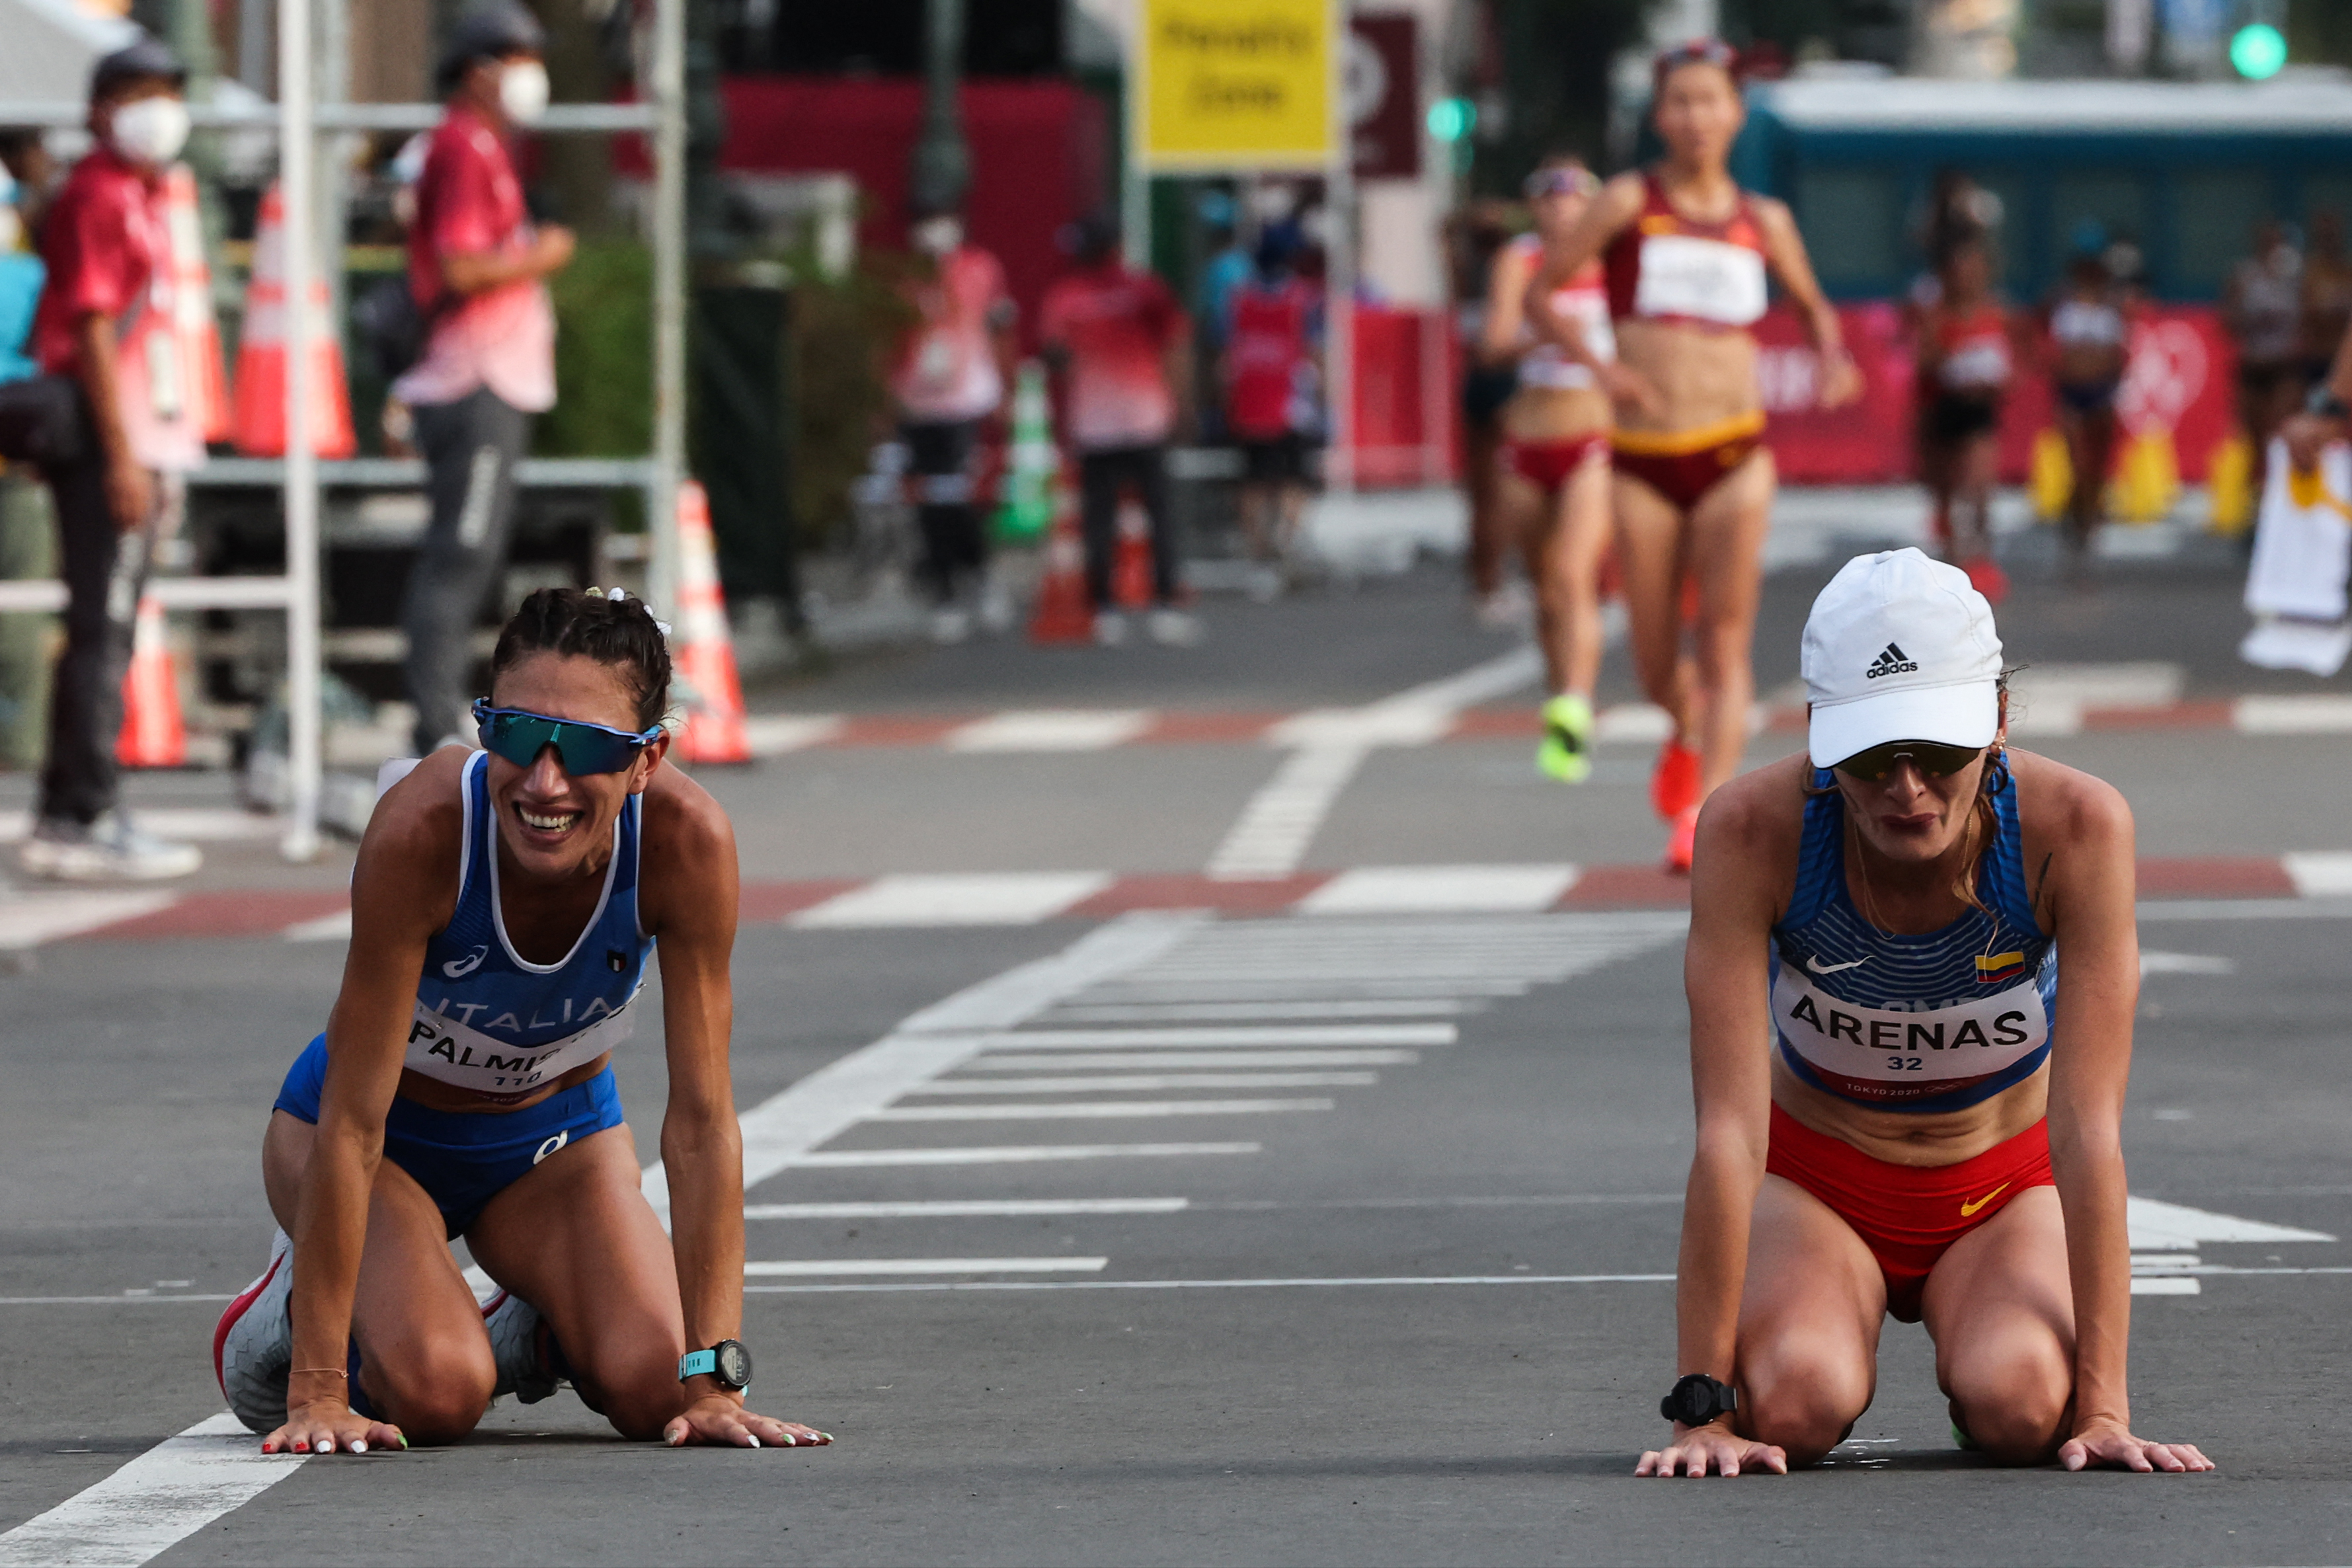 En video: el dramático final de la carrera de Sandra Lorena Arenas, una rival le iba a quitar la medalla de plata en los Juegos Olímpicos de Tokio 2020